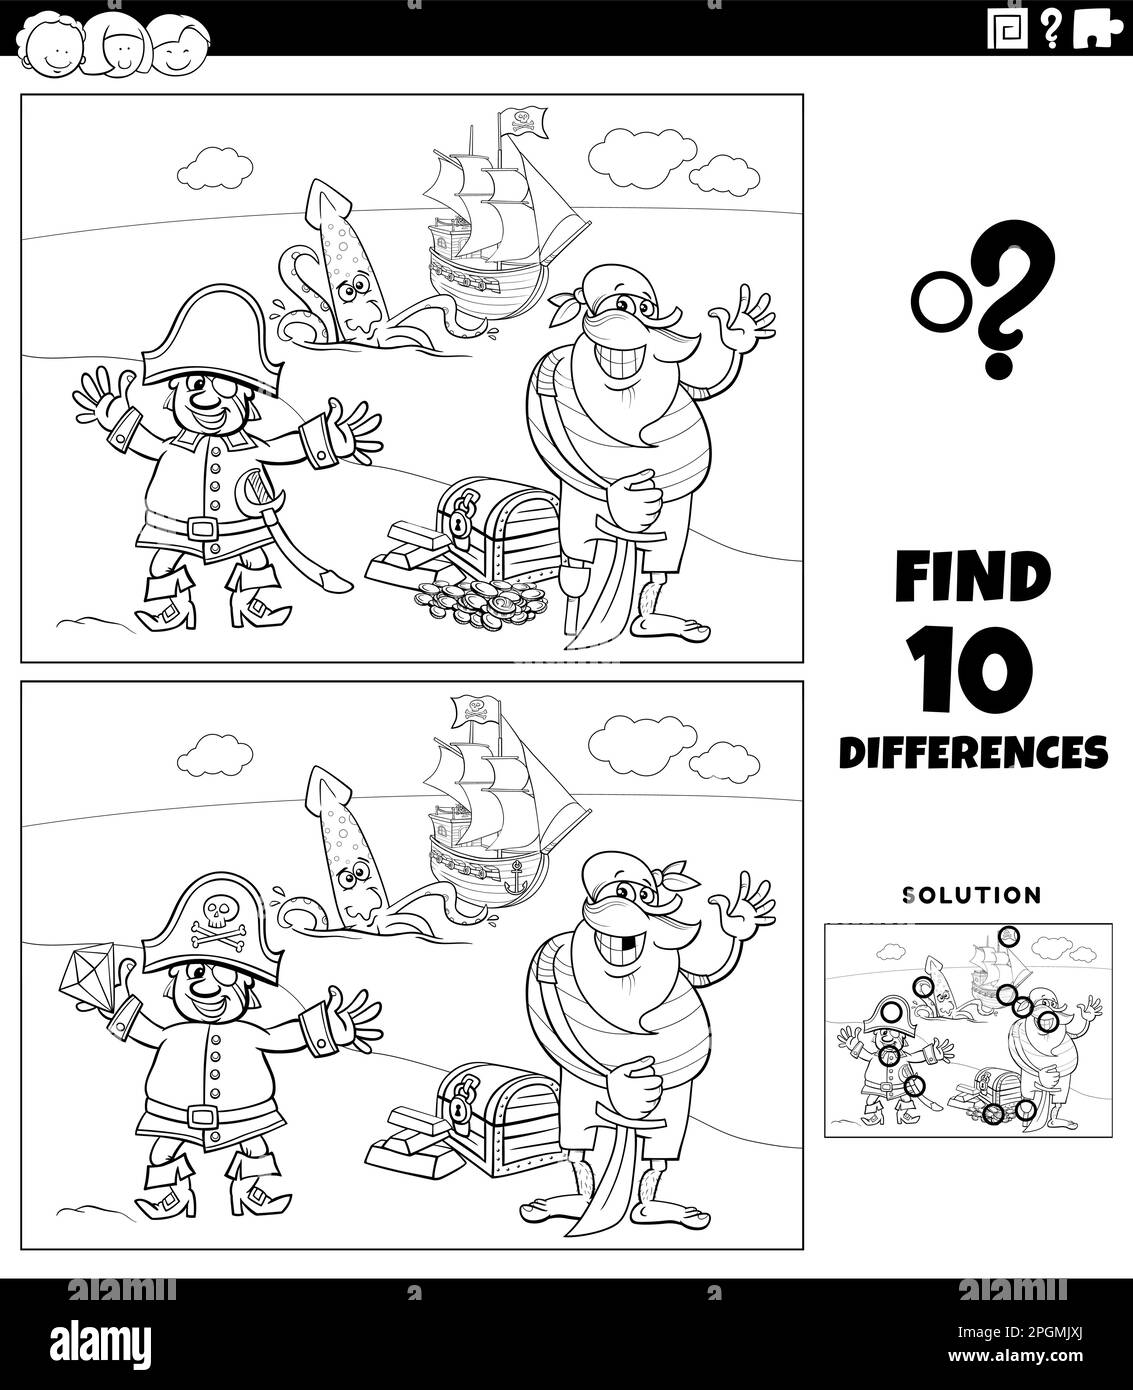 Dessin animé noir et blanc illustration de trouver les différences entre les images jeu éducatif avec des personnages pirates sur la coloration de l'île de Trésor Illustration de Vecteur